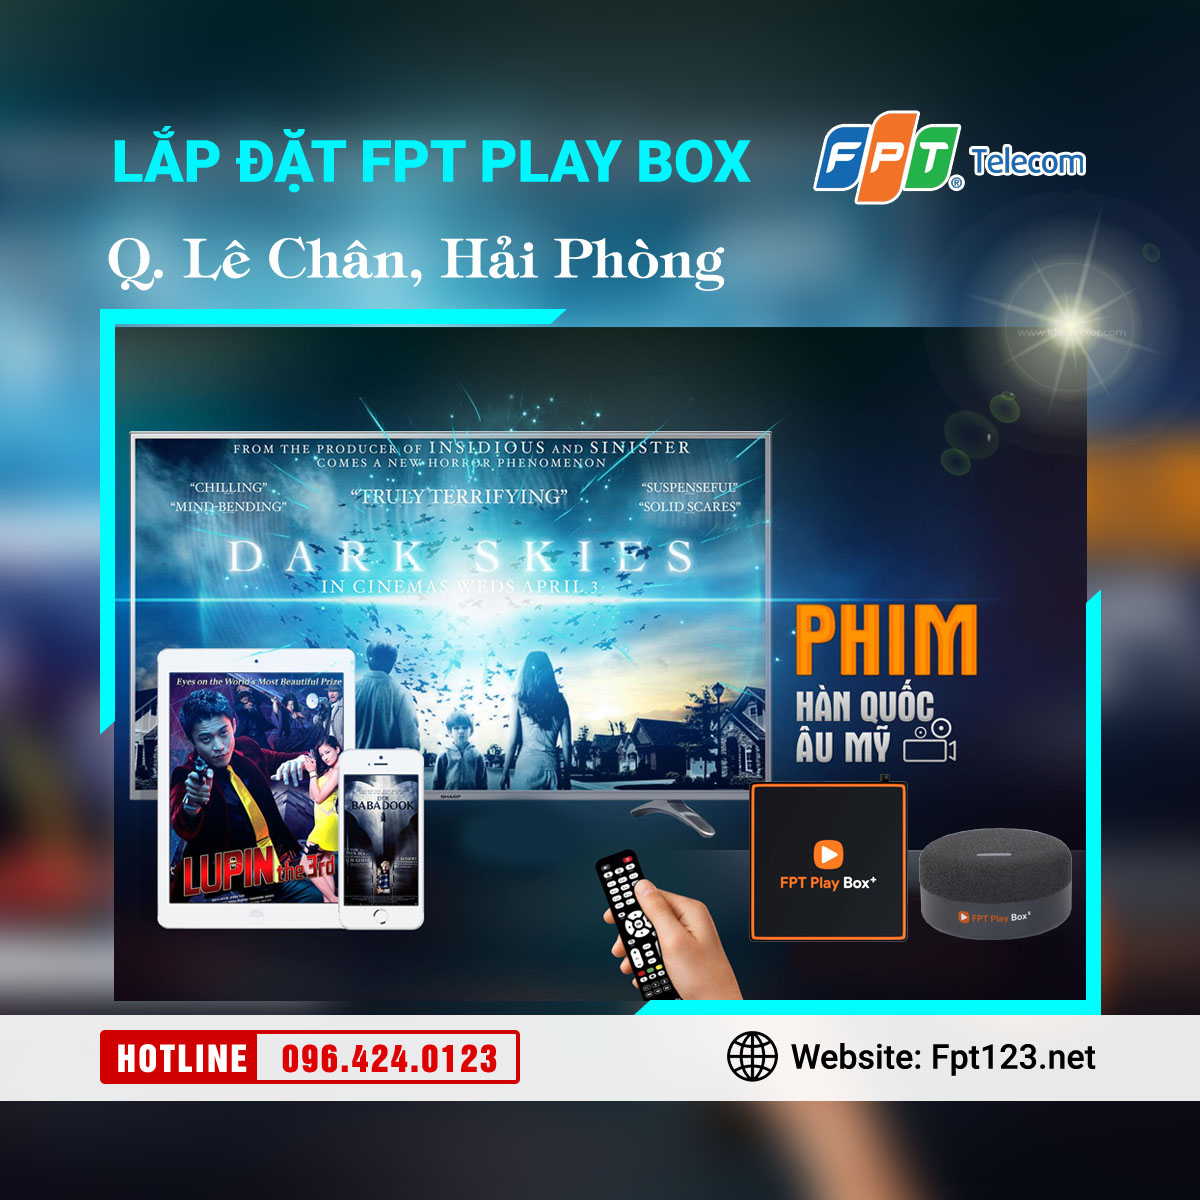 Lắp đặt FPT Play Box ở quận Lê Chân, Hải Phòng